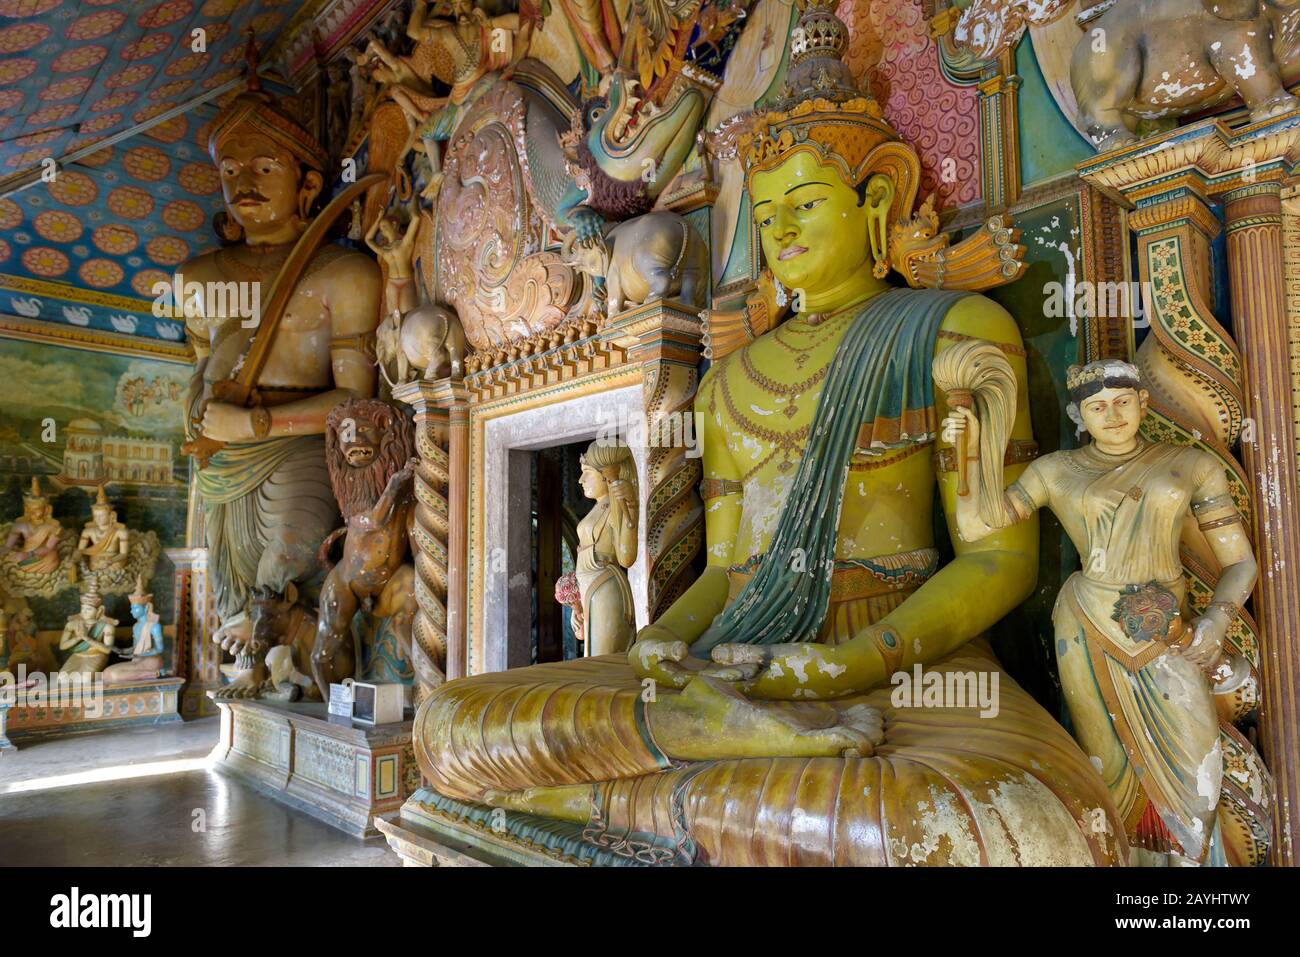 Dickwella, Sri Lanka - 4 novembre 2017: Statua del Buddha all'interno del tempio buddista di Wewurukannala. Interni lussuosi di un antico luogo di culto buddista. Foto Stock